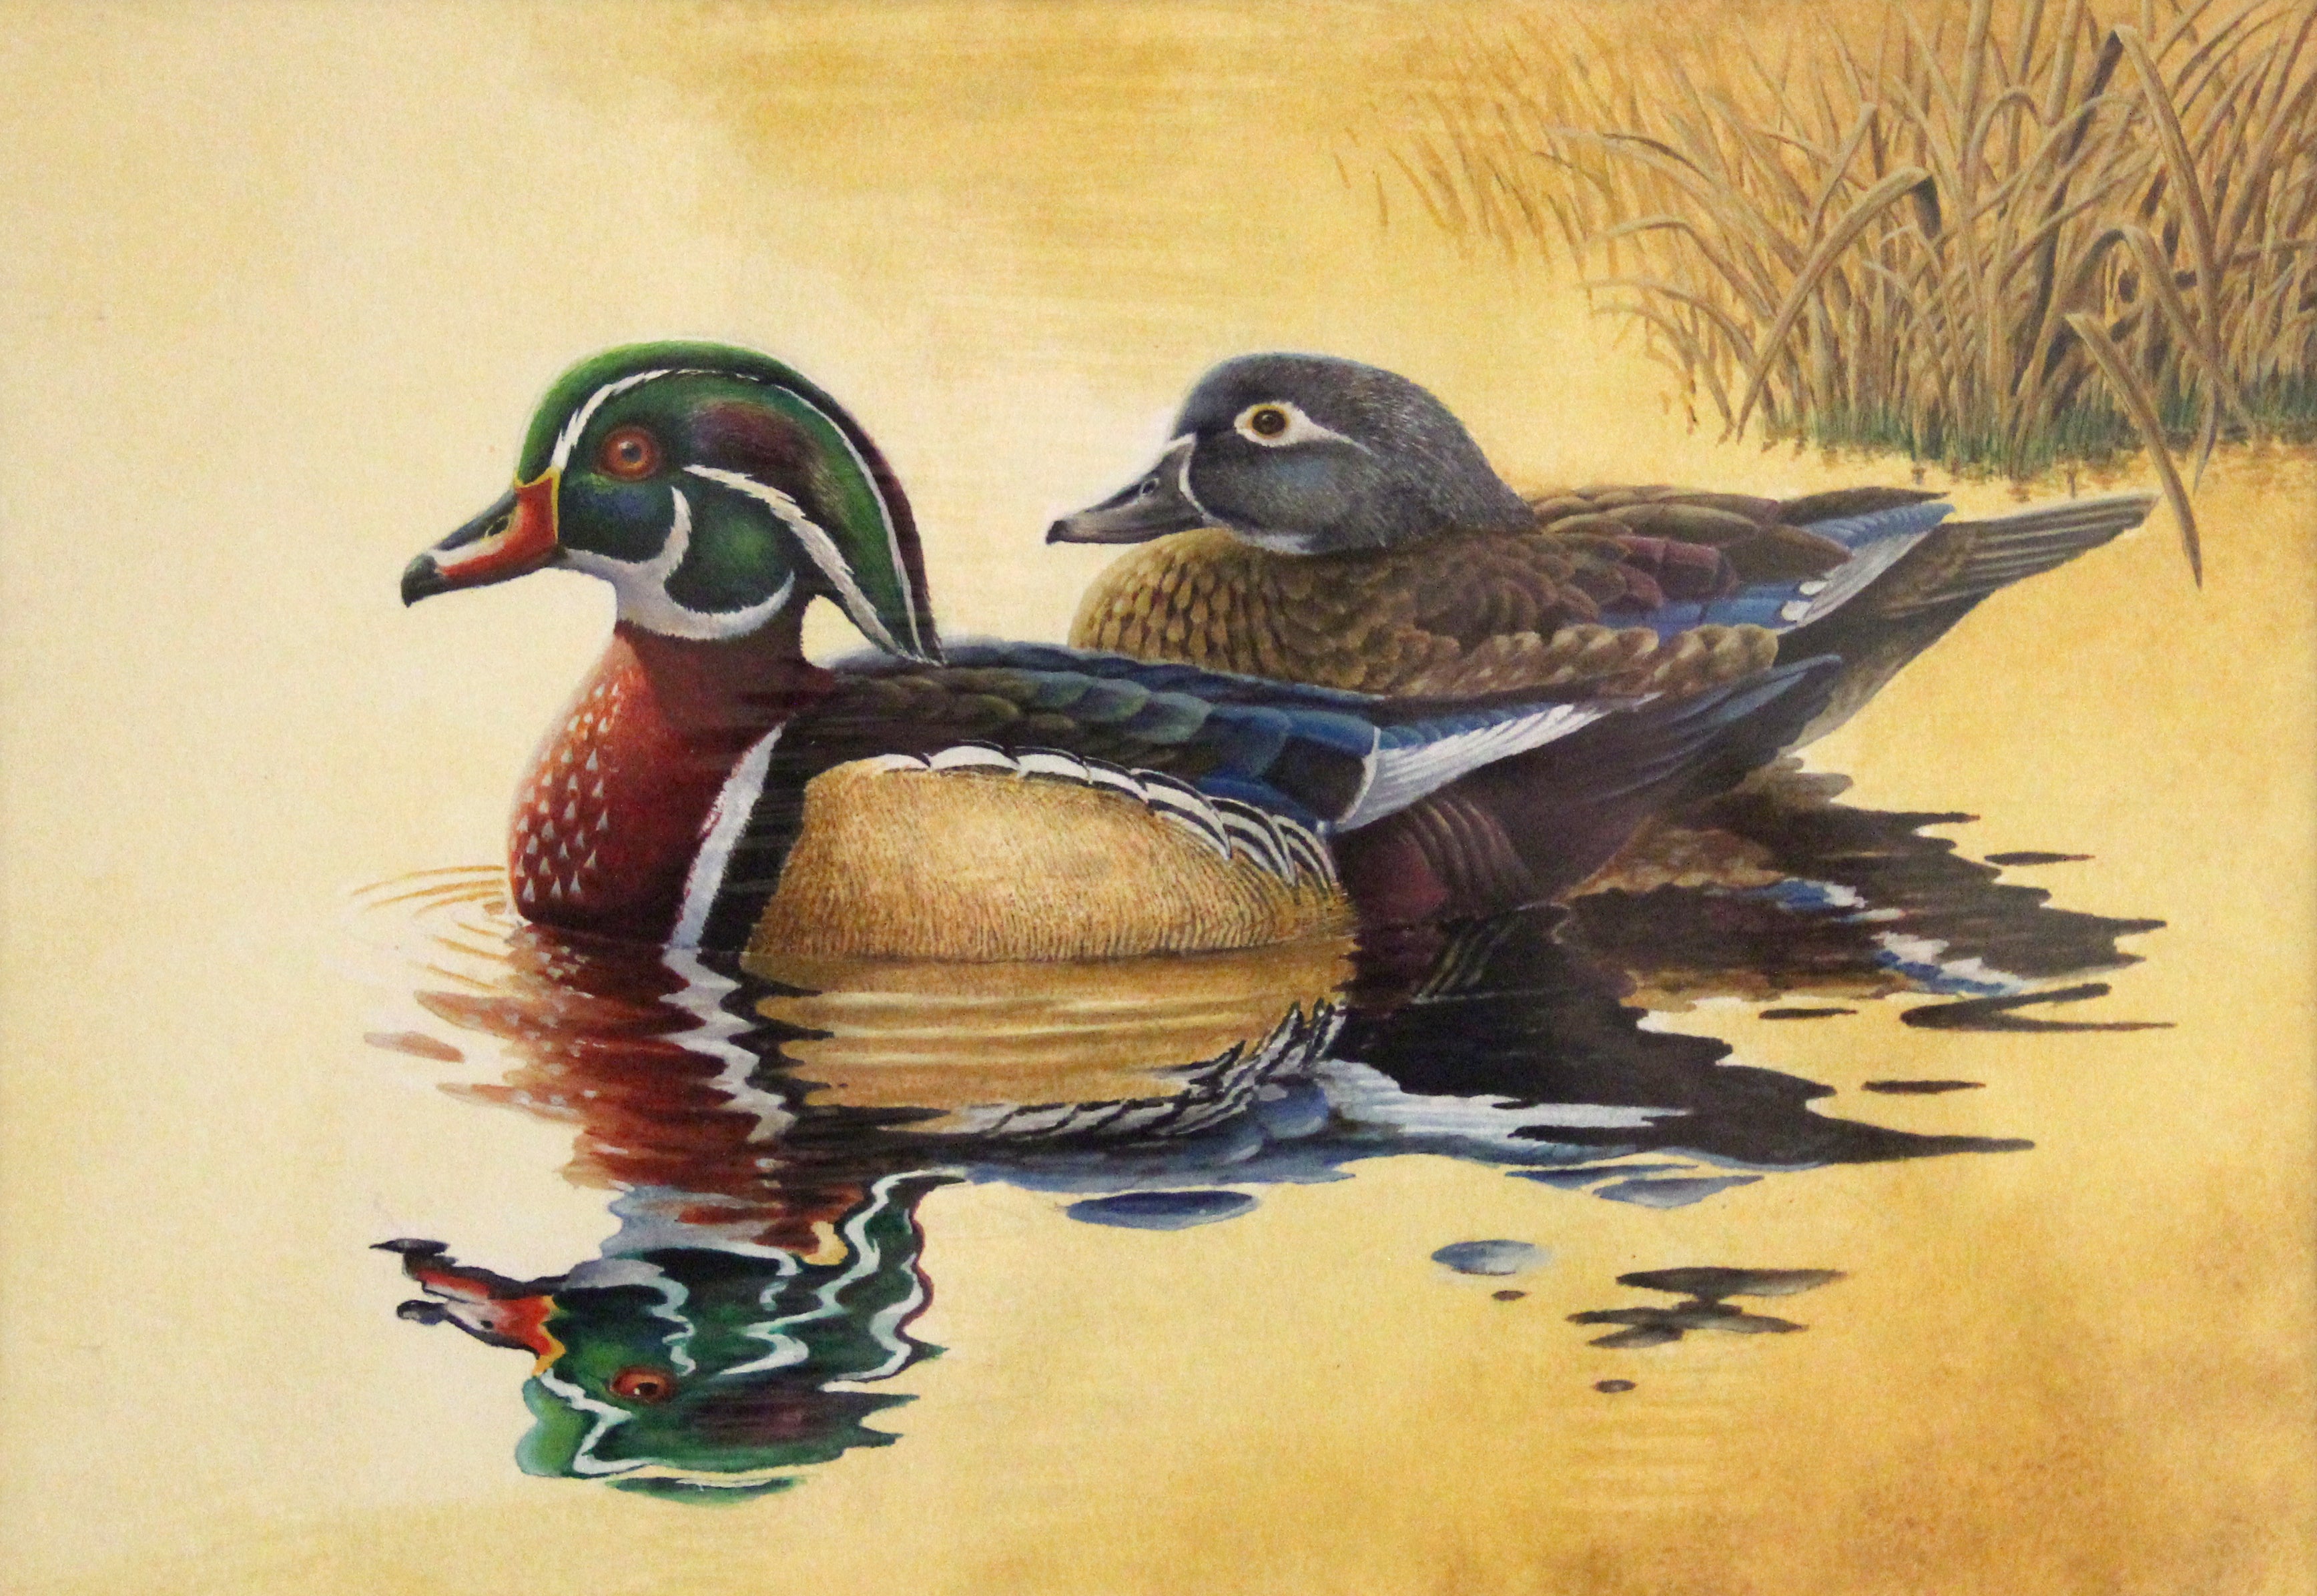 Photo: 2018 Waterfowl Stamp Art Contest Winner - Wood Ducks by Eric Greene.